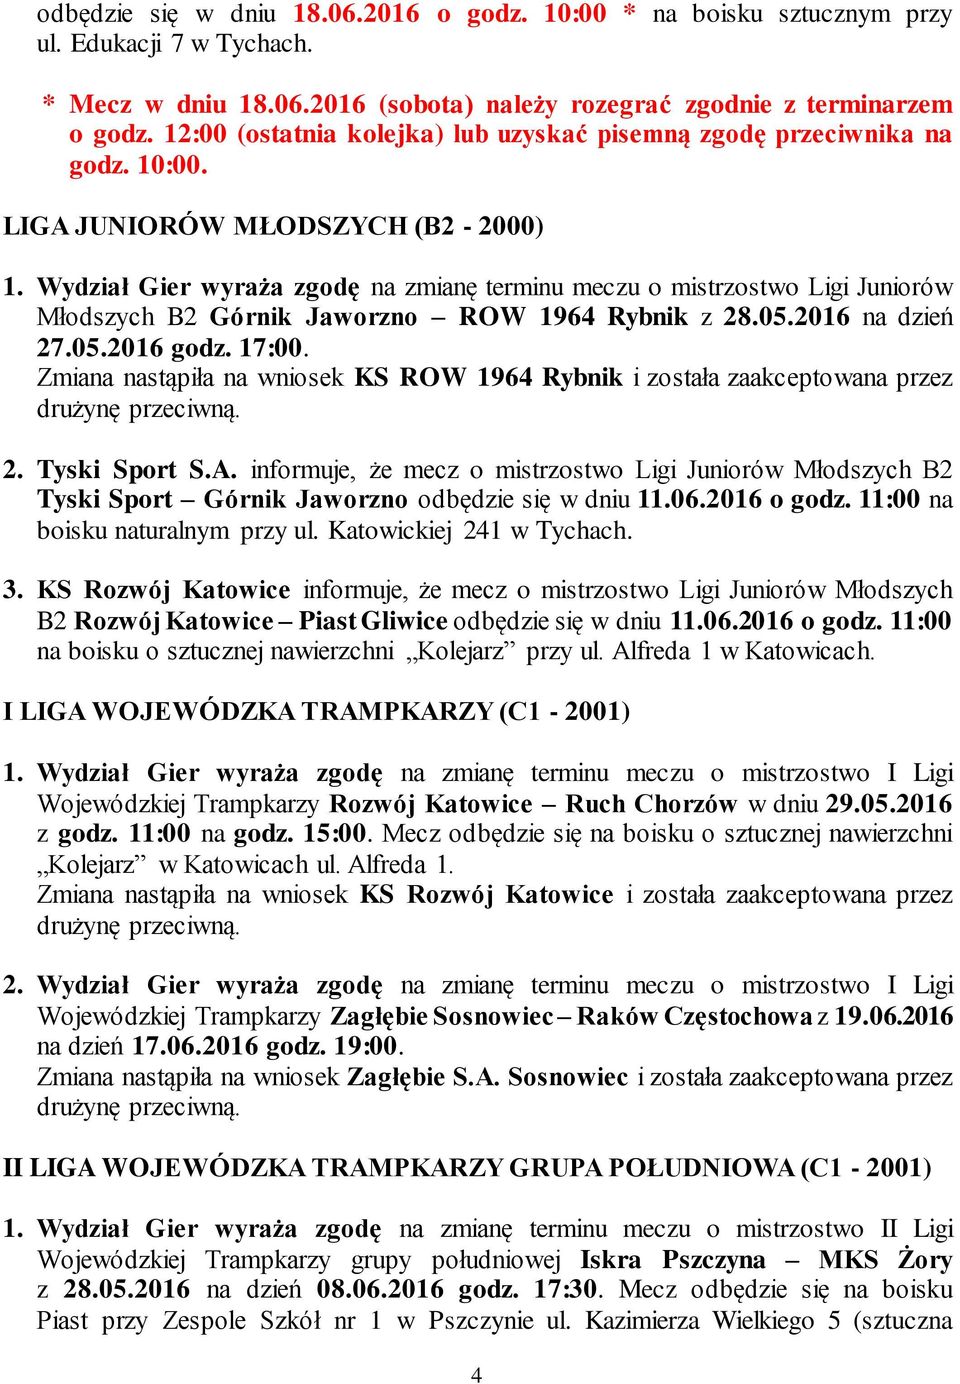 Wydział Gier wyraża zgodę na zmianę terminu meczu o mistrzostwo Ligi Juniorów Młodszych B2 Górnik Jaworzno ROW 1964 Rybnik z 28.05.2016 na dzień 27.05.2016 godz. 17:00.